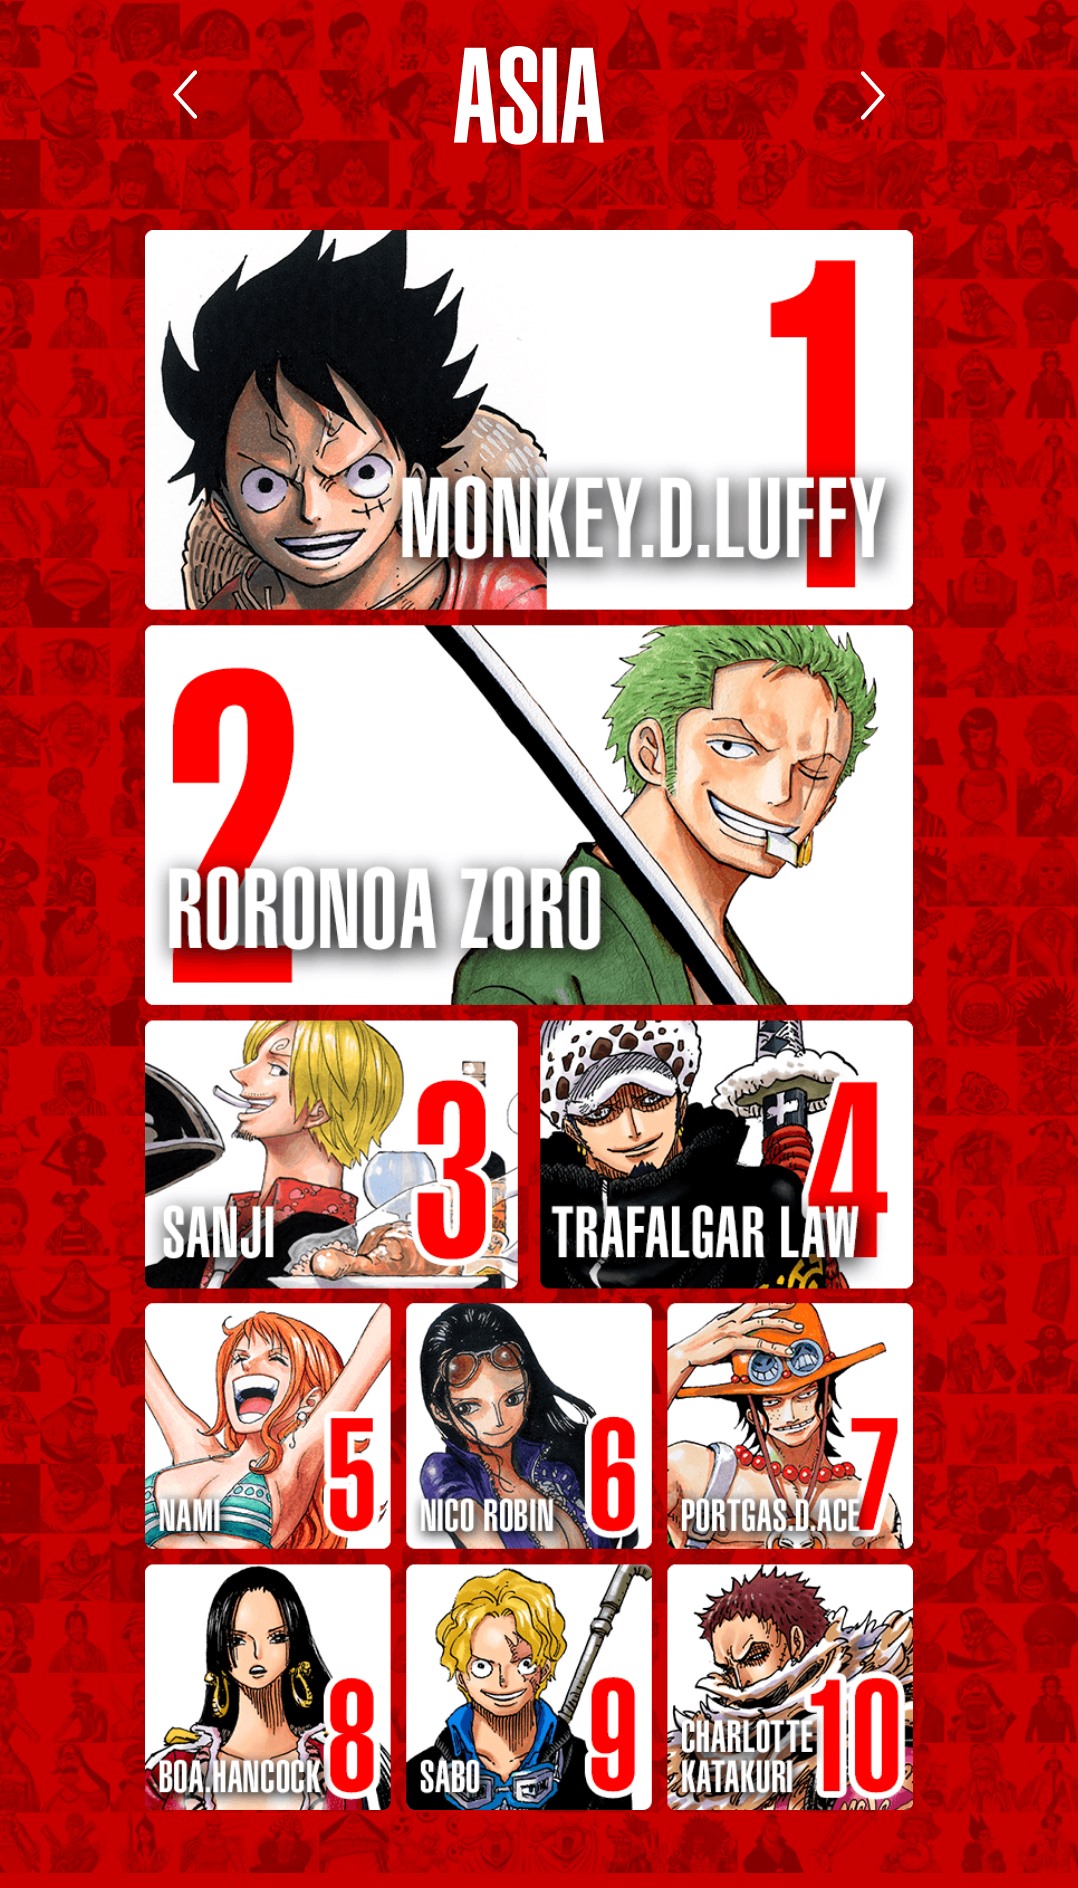 Siêu phẩm manga One Piece đã cho chúng ta rất nhiều nhân vật yêu thích và mỗi người đều có sức hút riêng. Nhưng nếu bạn muốn xem những hình ảnh của nhân vật mình yêu thích nhất thì đừng bỏ qua bộ sưu tập Nhân vật One Piece yêu thích này. Chắc chắn bạn sẽ rất thích!